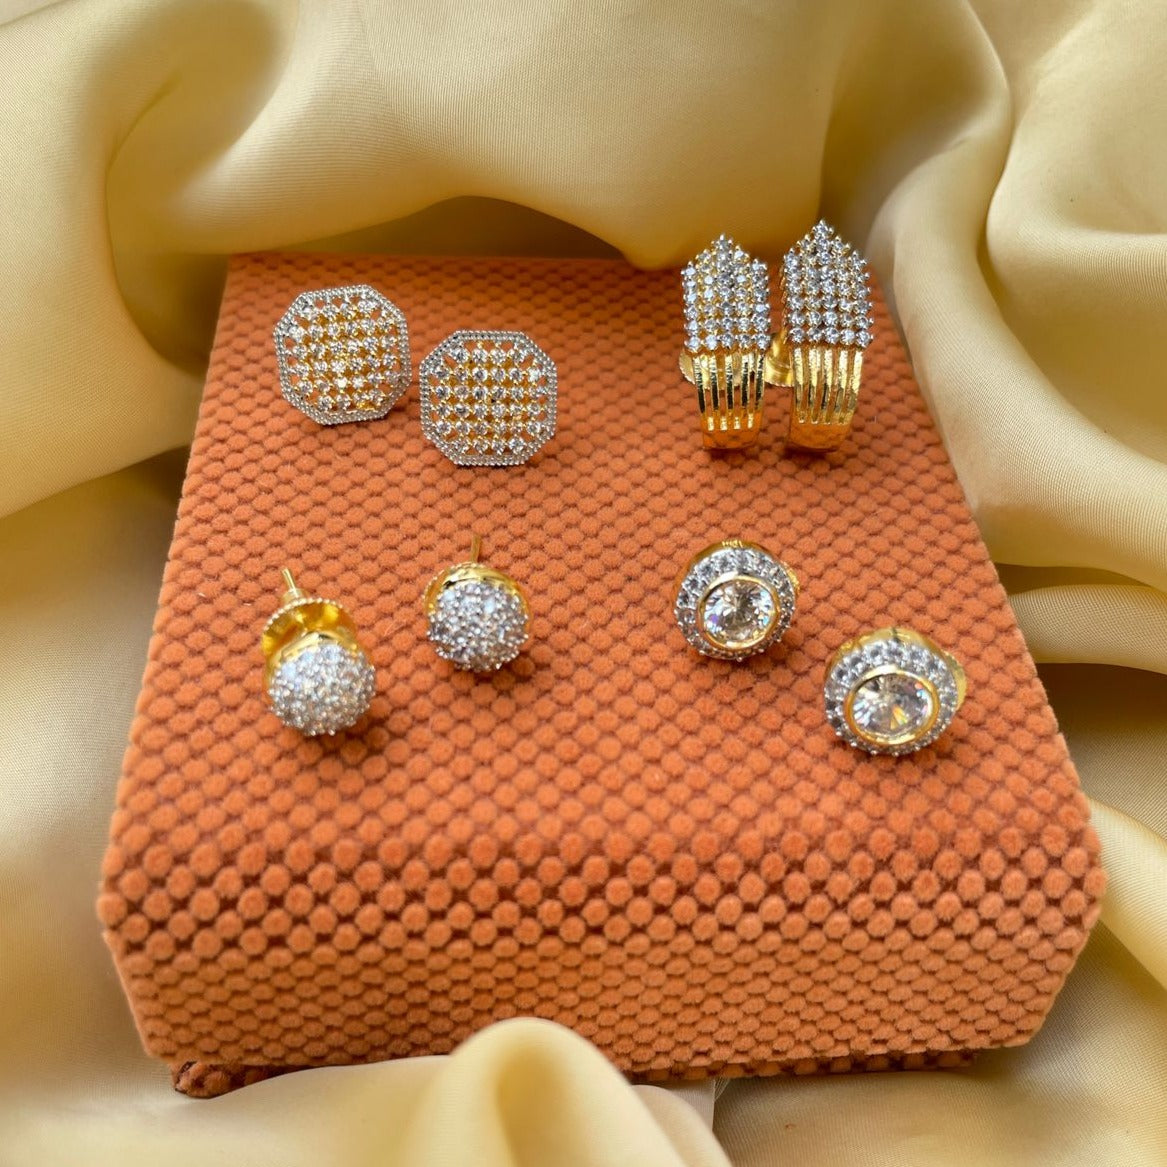 Showroom of Fancy daily wear earrings 22k gold | Jewelxy - 234483